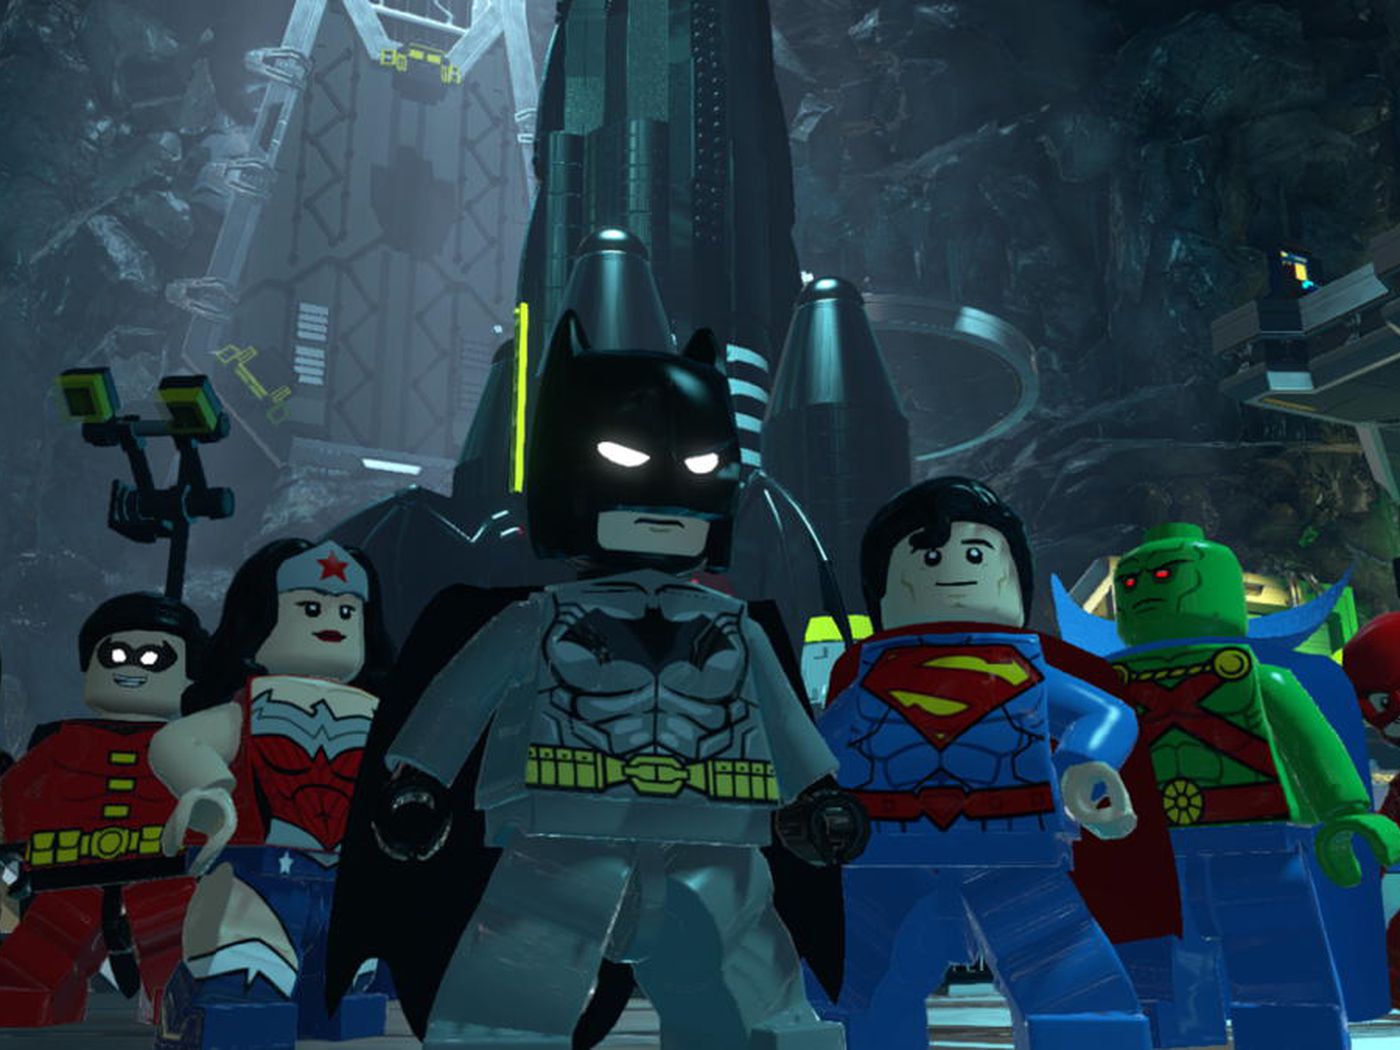 Lego Batman3: Beyond Gotham